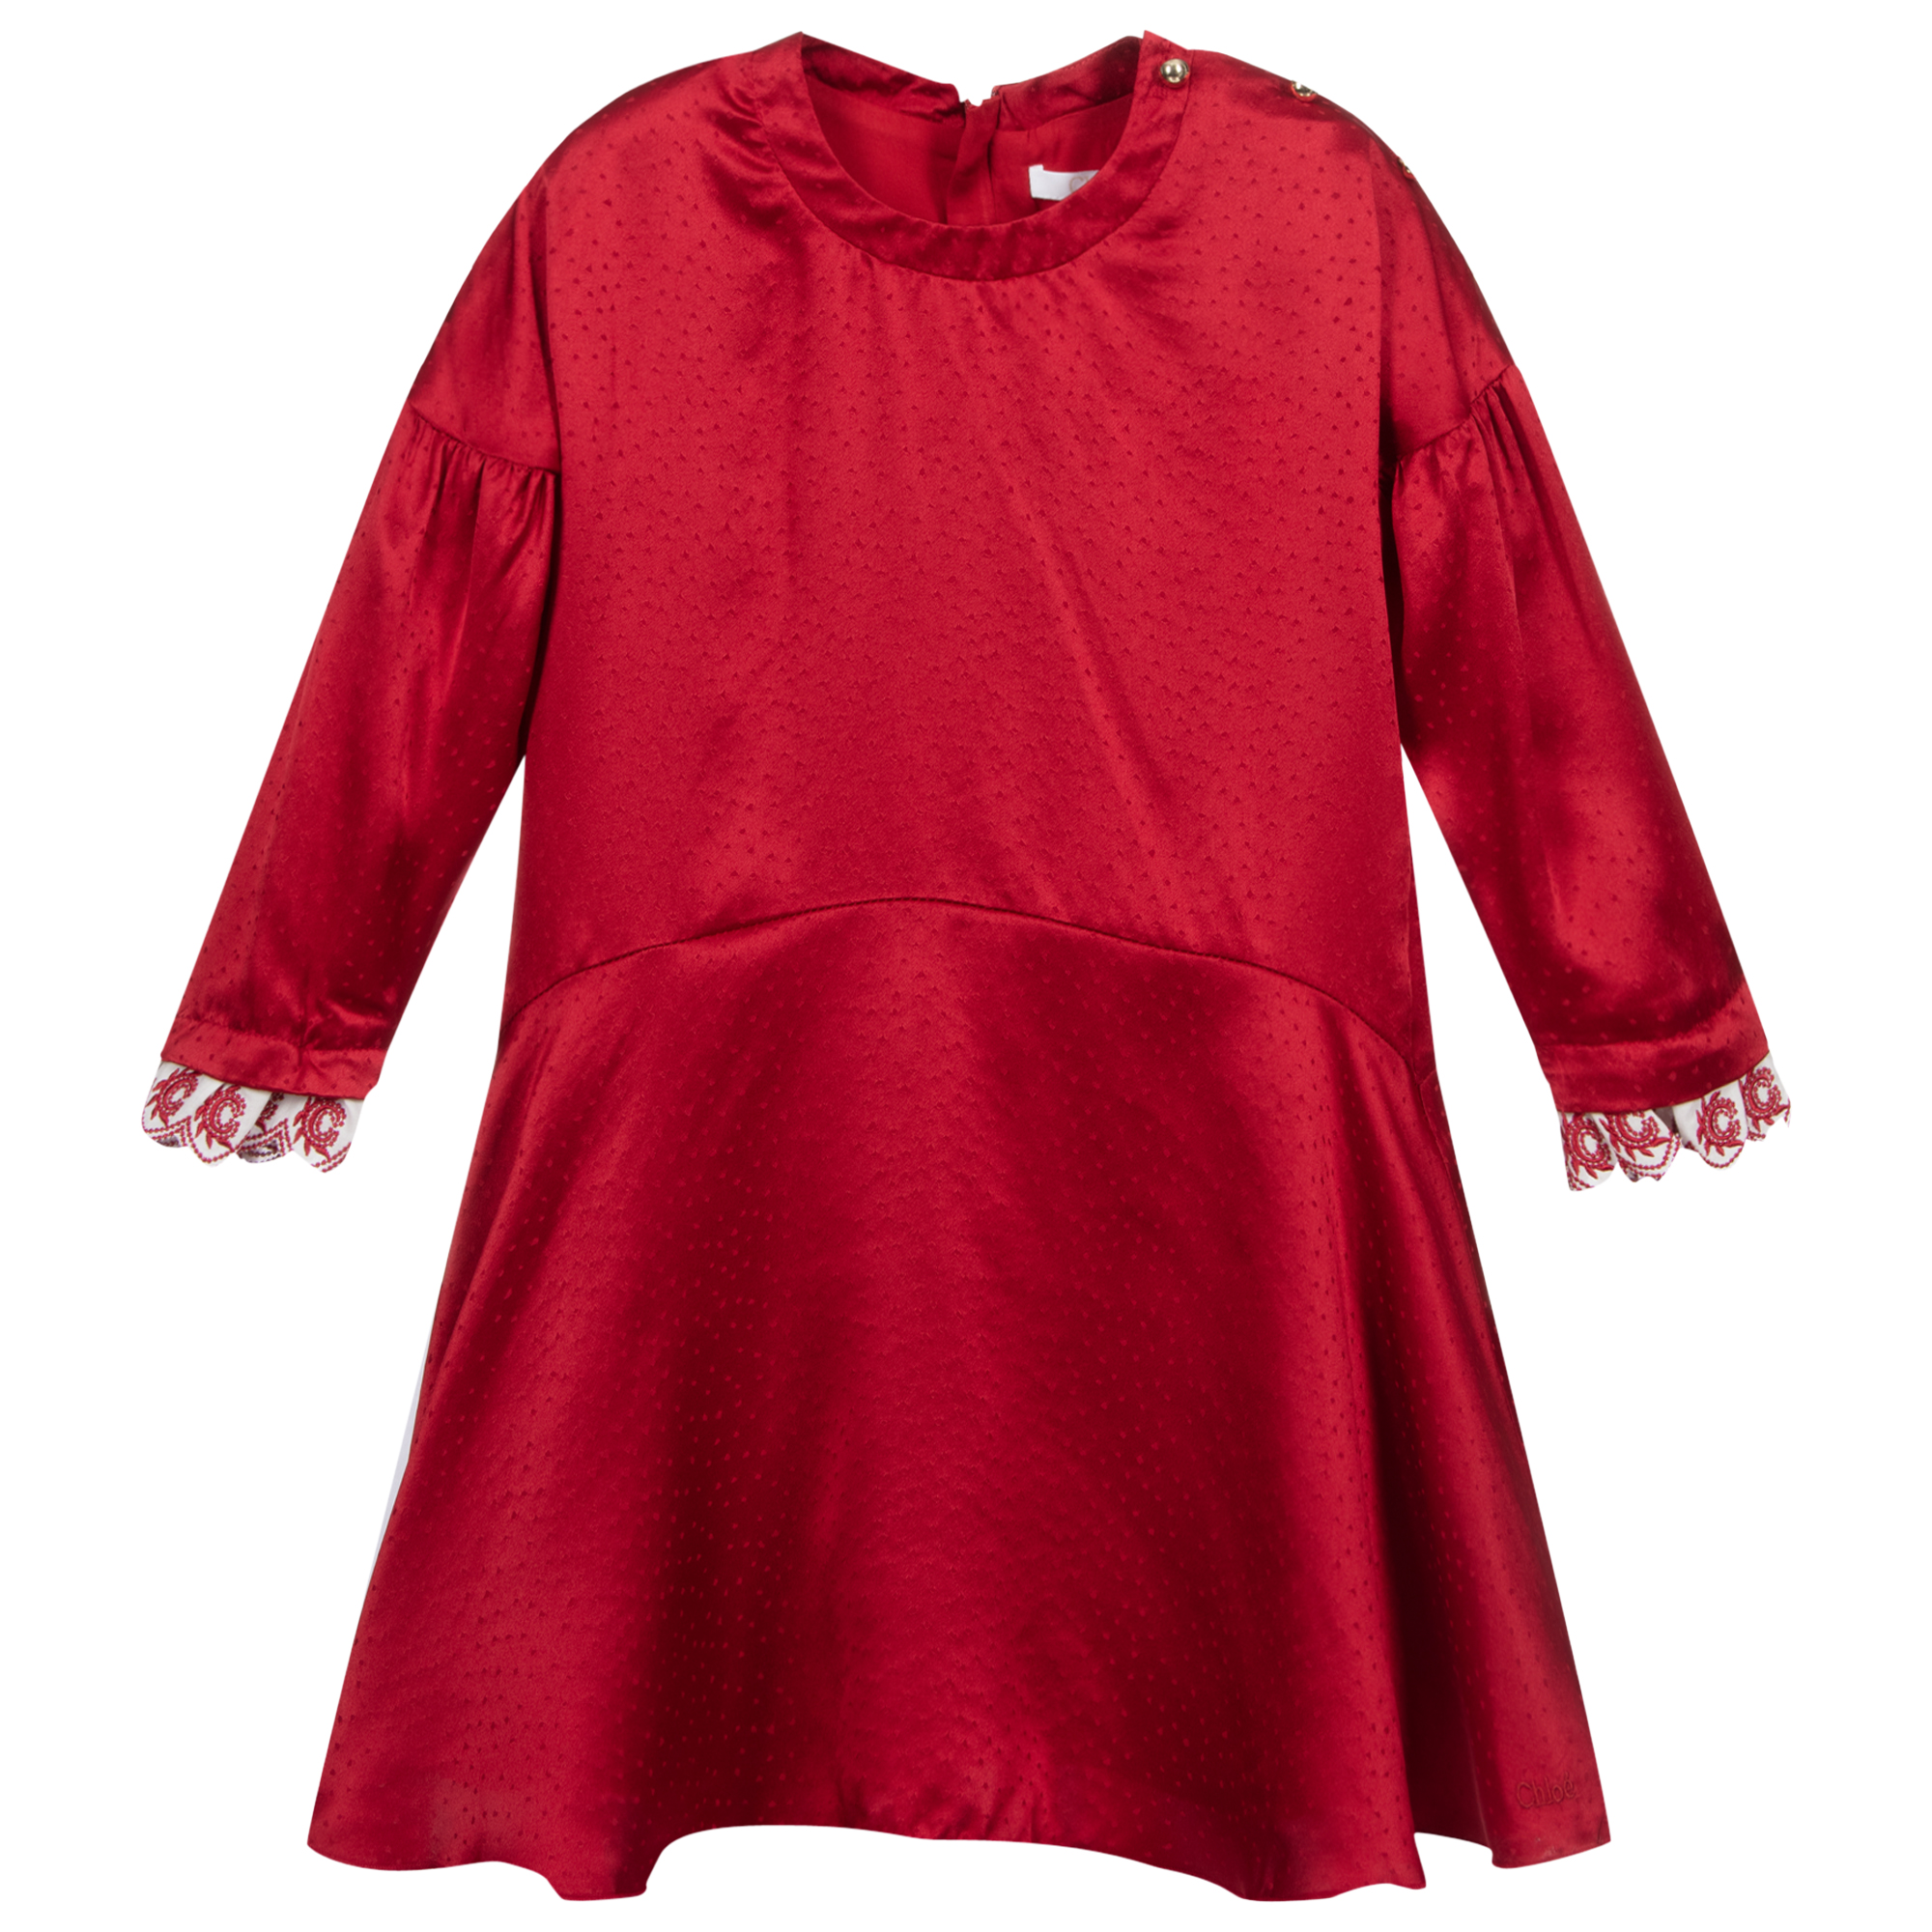 red silk dress mini